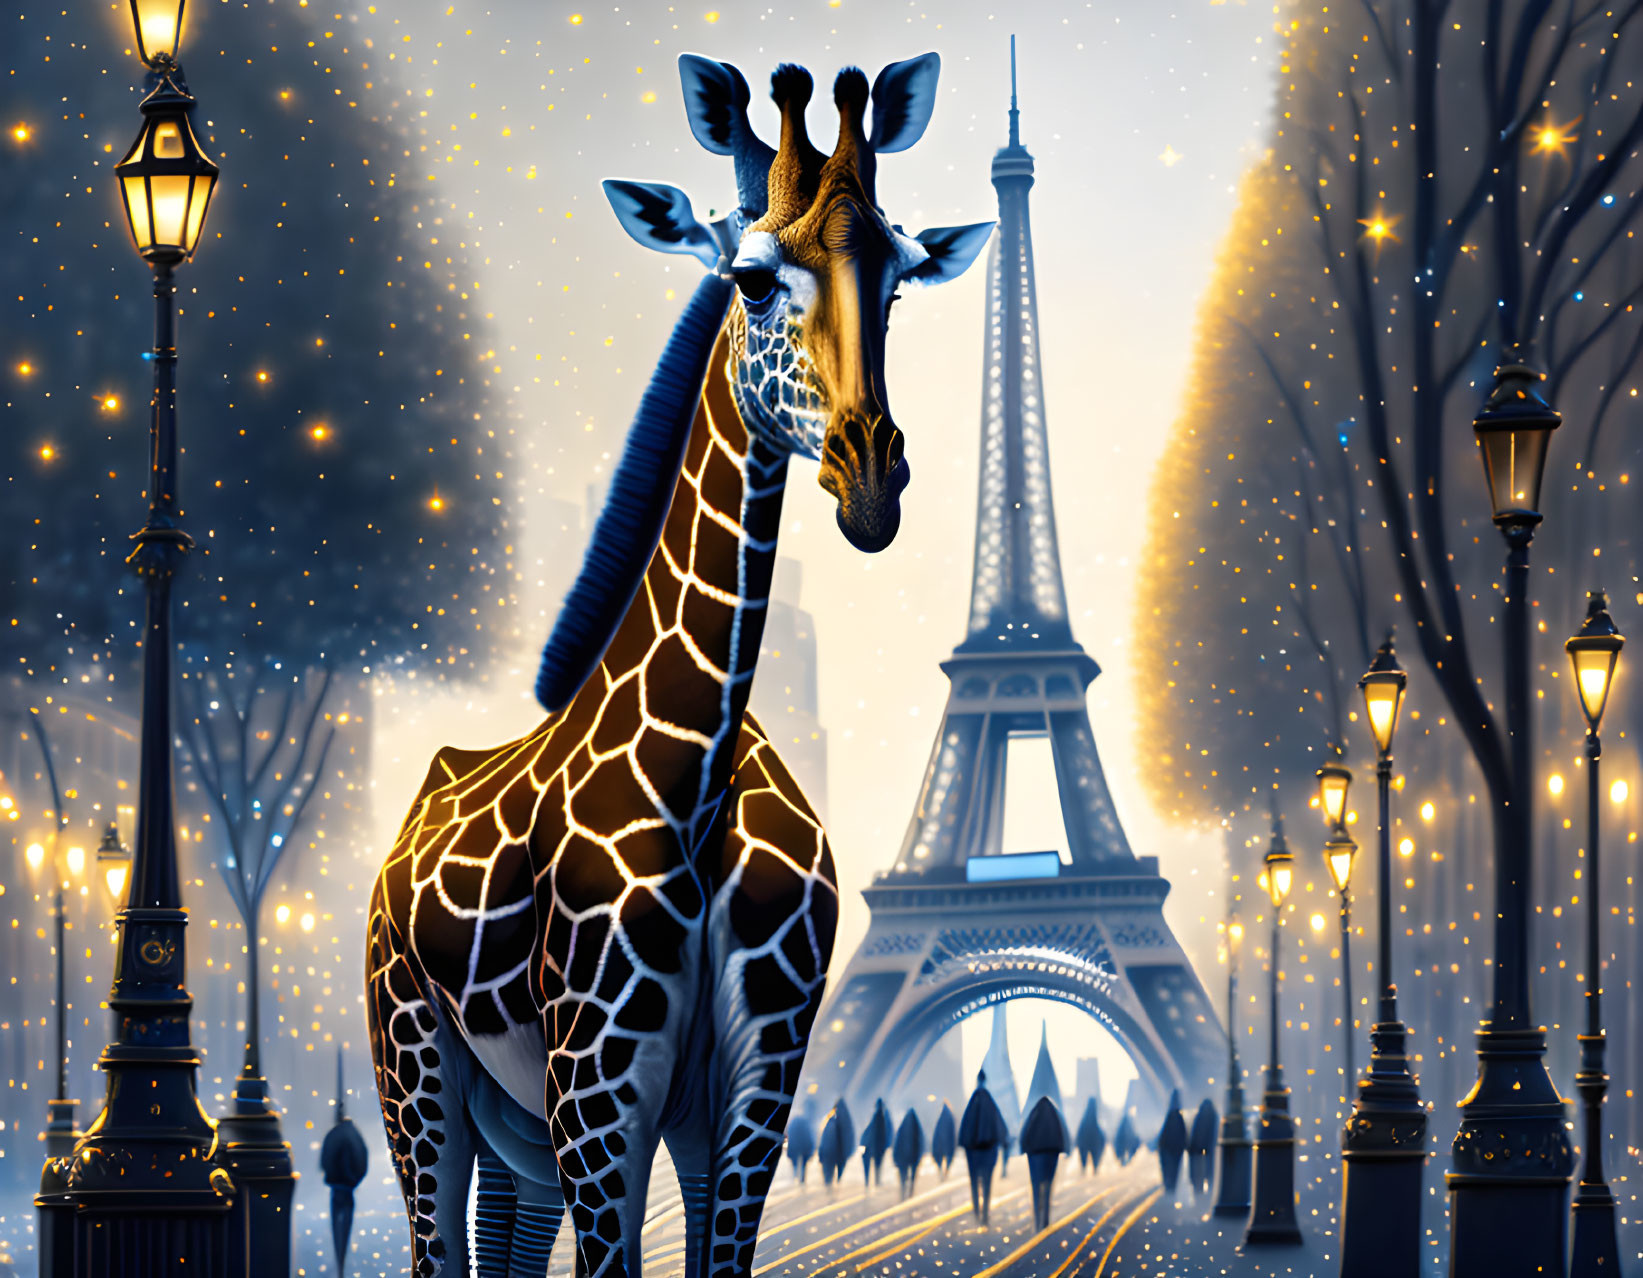 Giraffe next to Eiffel tower